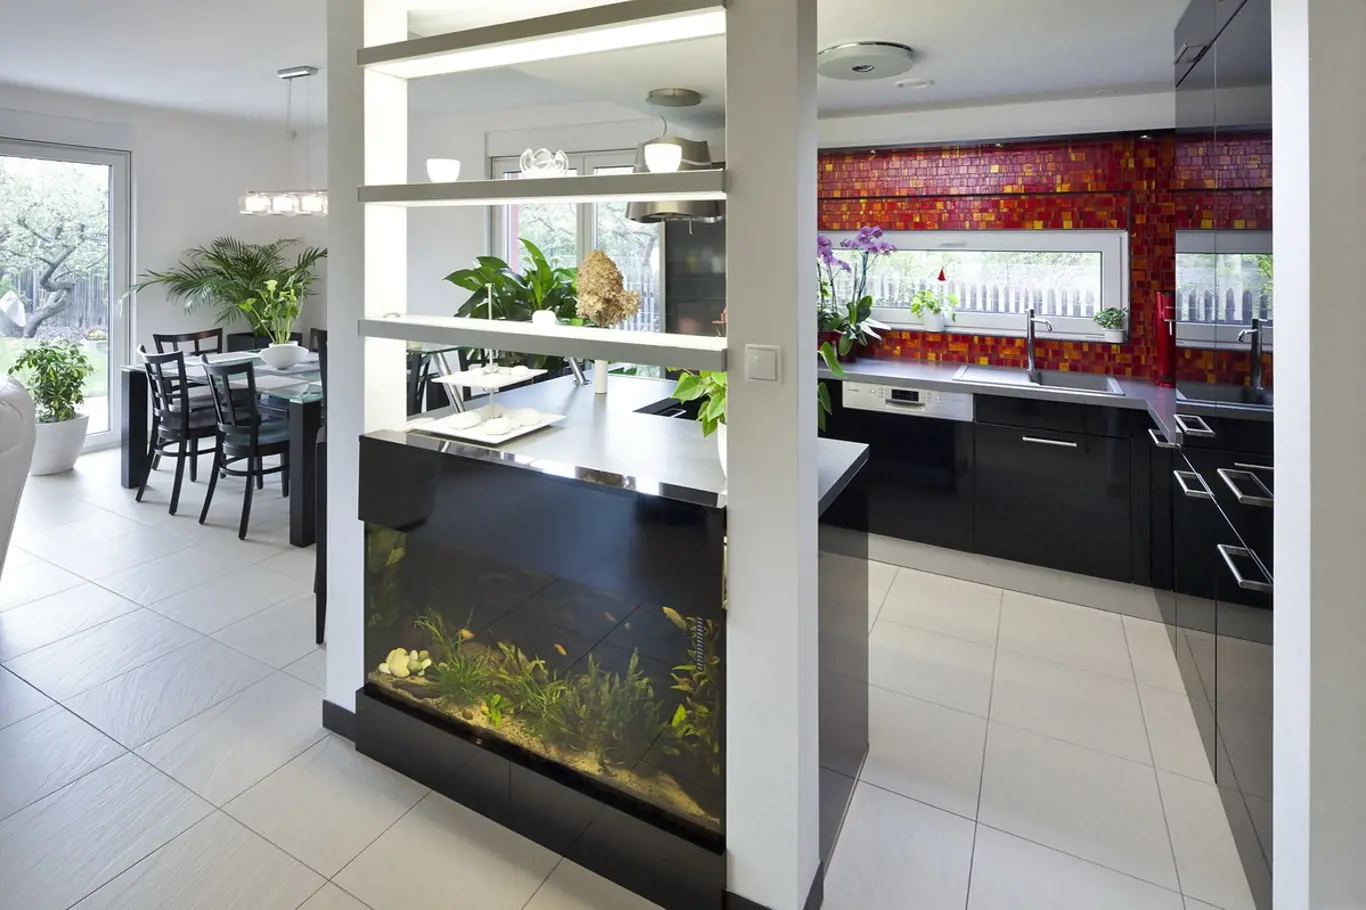 Součástí kuchyňské linky je vestavěné akvárium